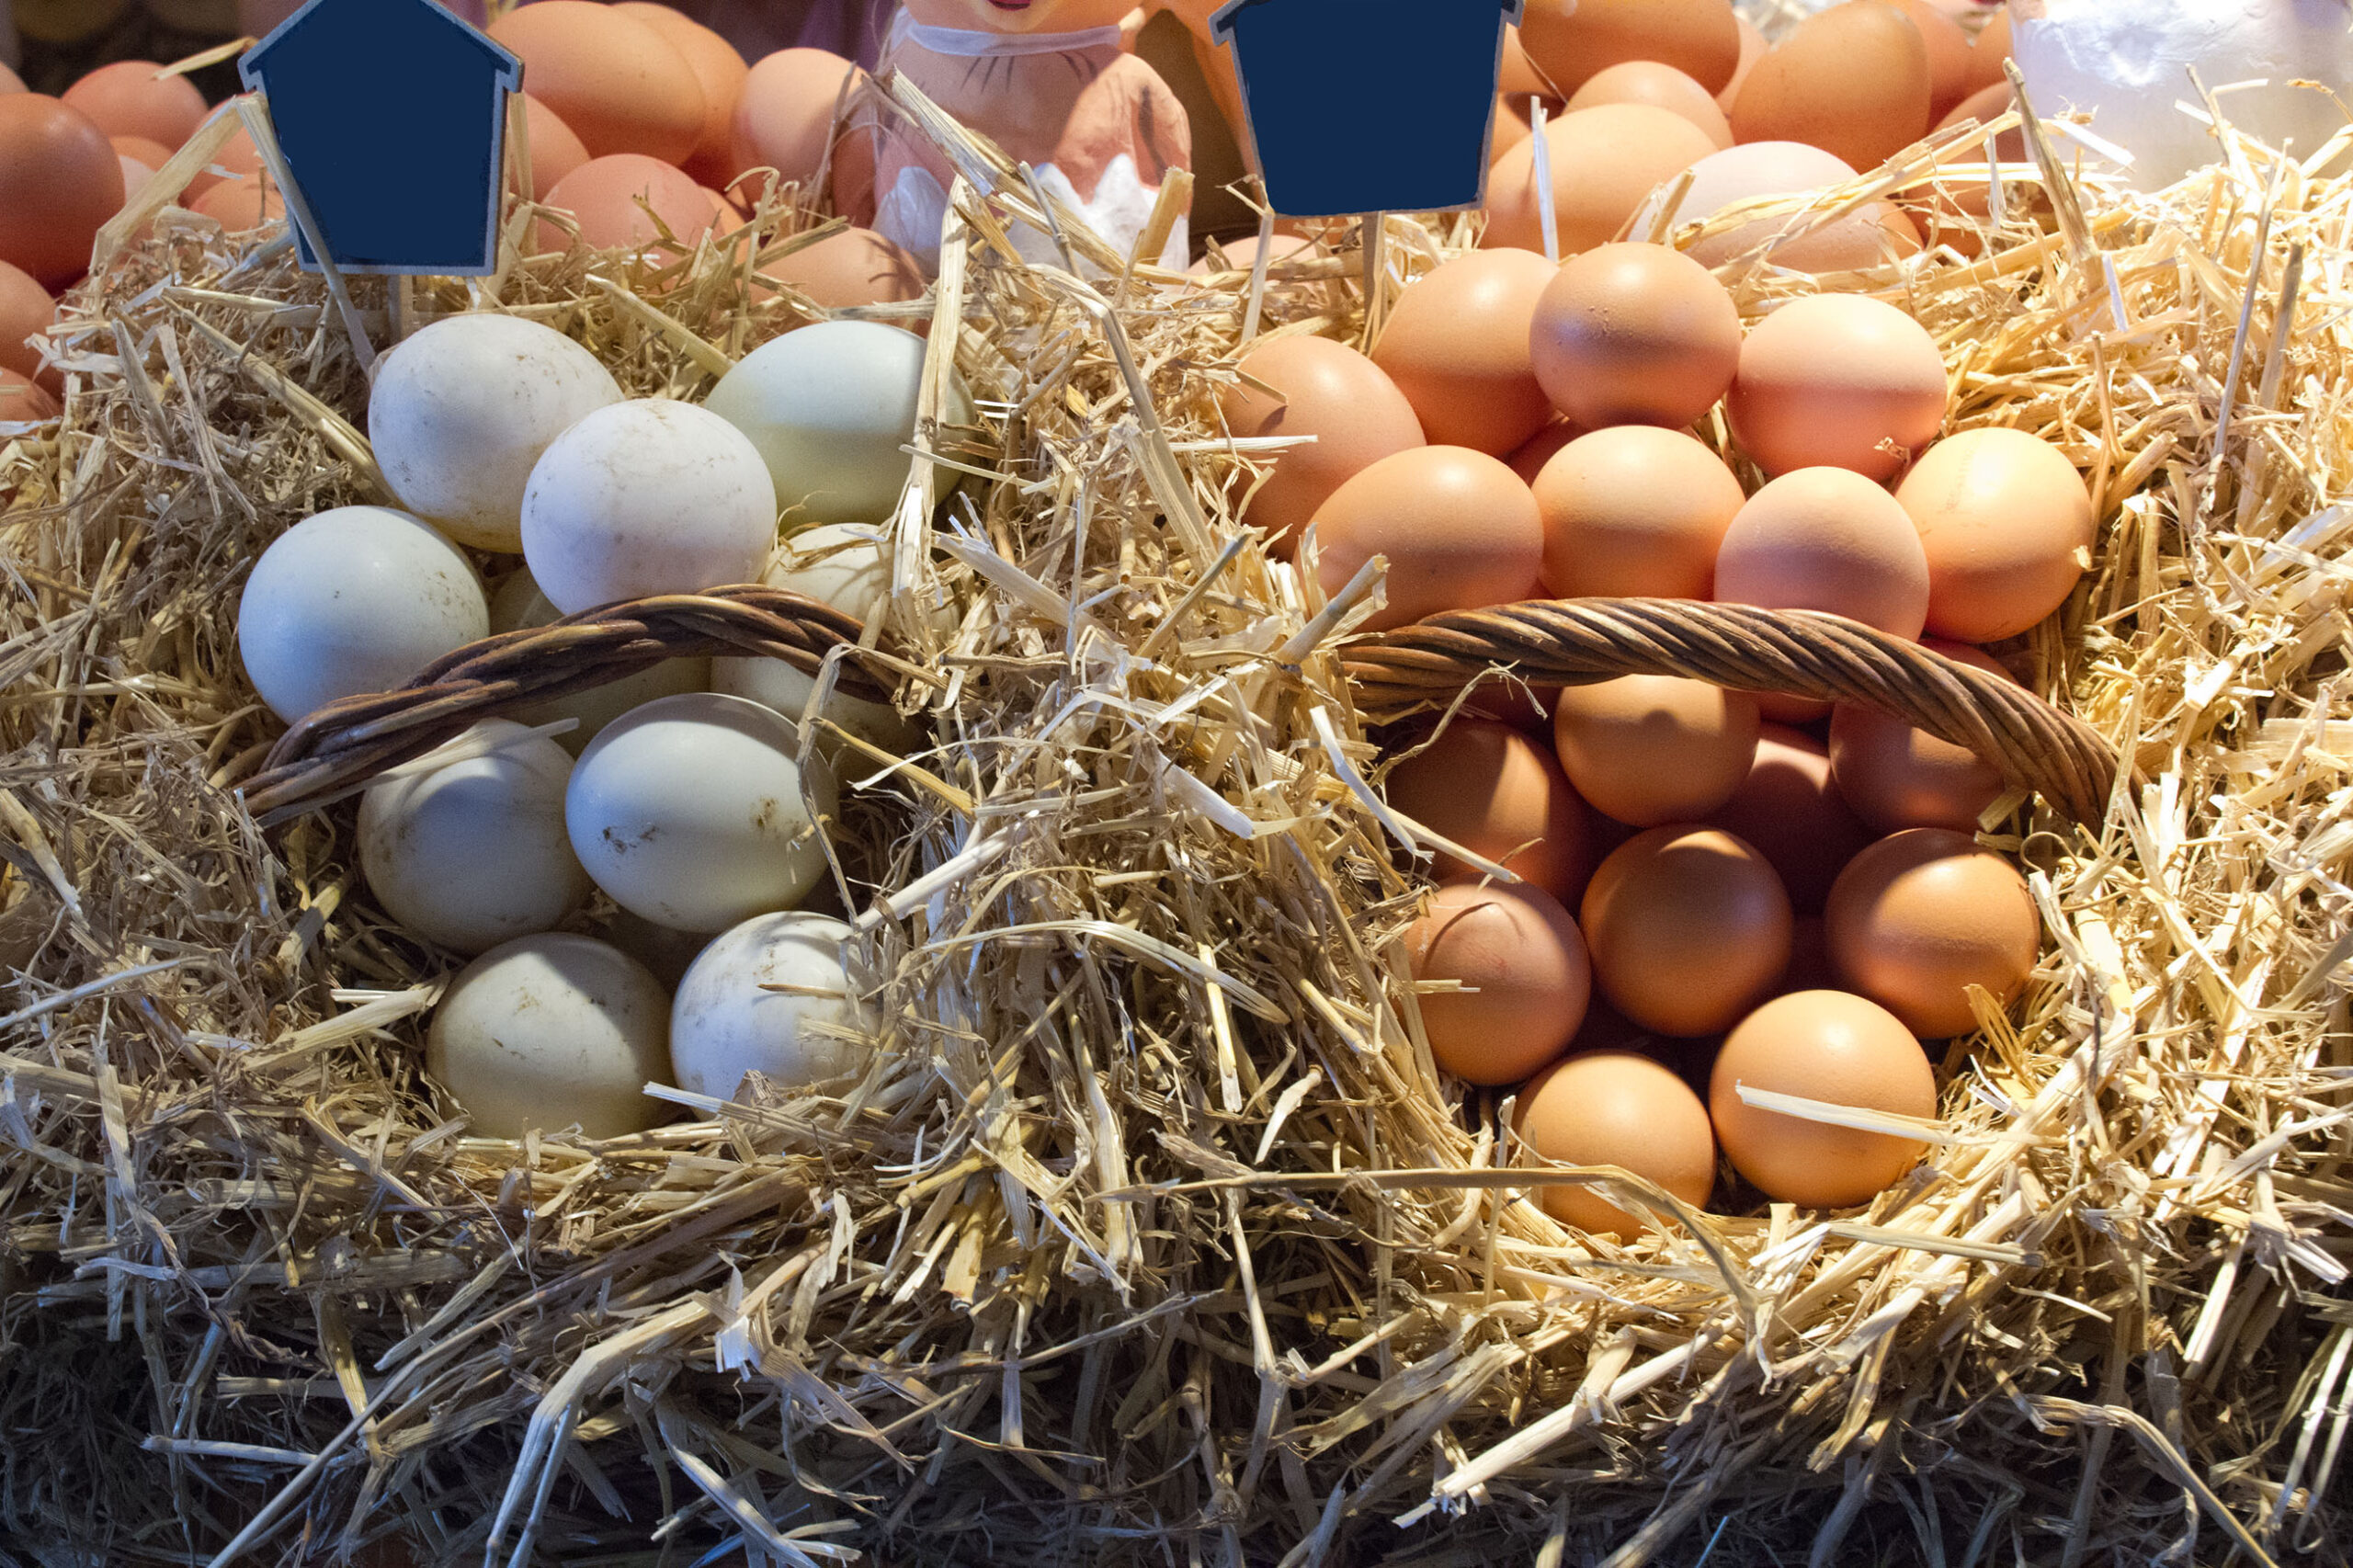 خاص| الصحراوي: زيادة أرصدة البيض في المزارع والمحال التجارية سيحول دون ارتفاع الأسعار الأيام المقبلة